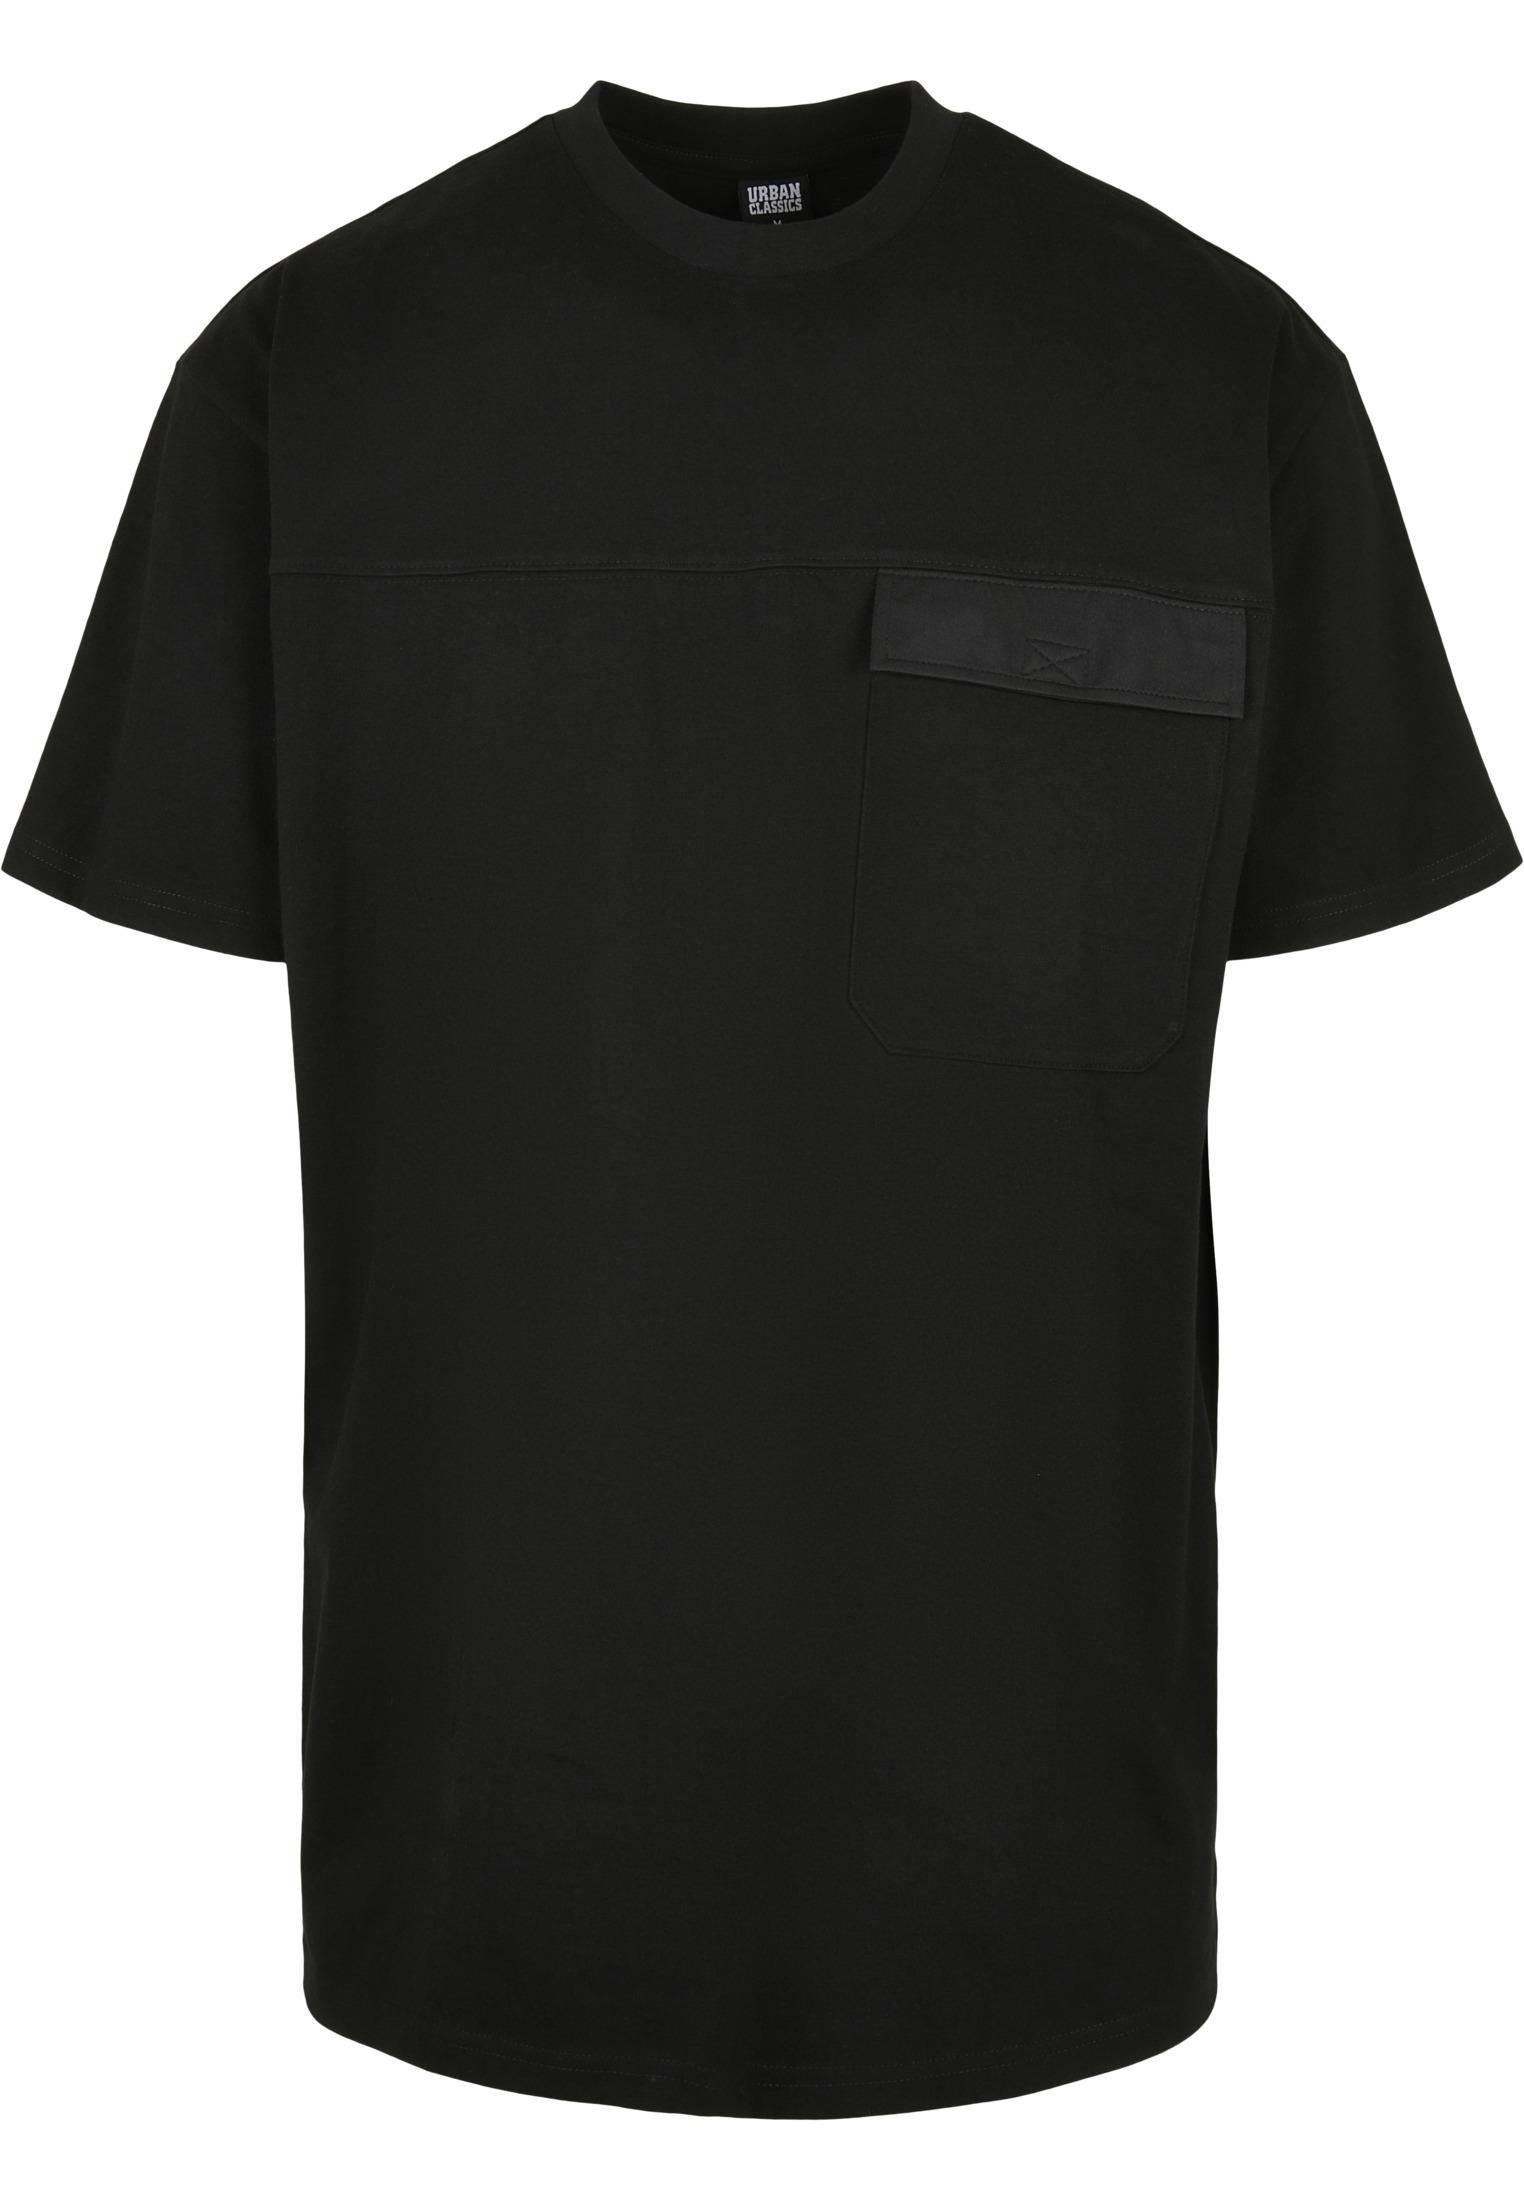 URBAN CLASSICS Print-Shirt TB4128 Oversized Big Flap Pocket Tee Black